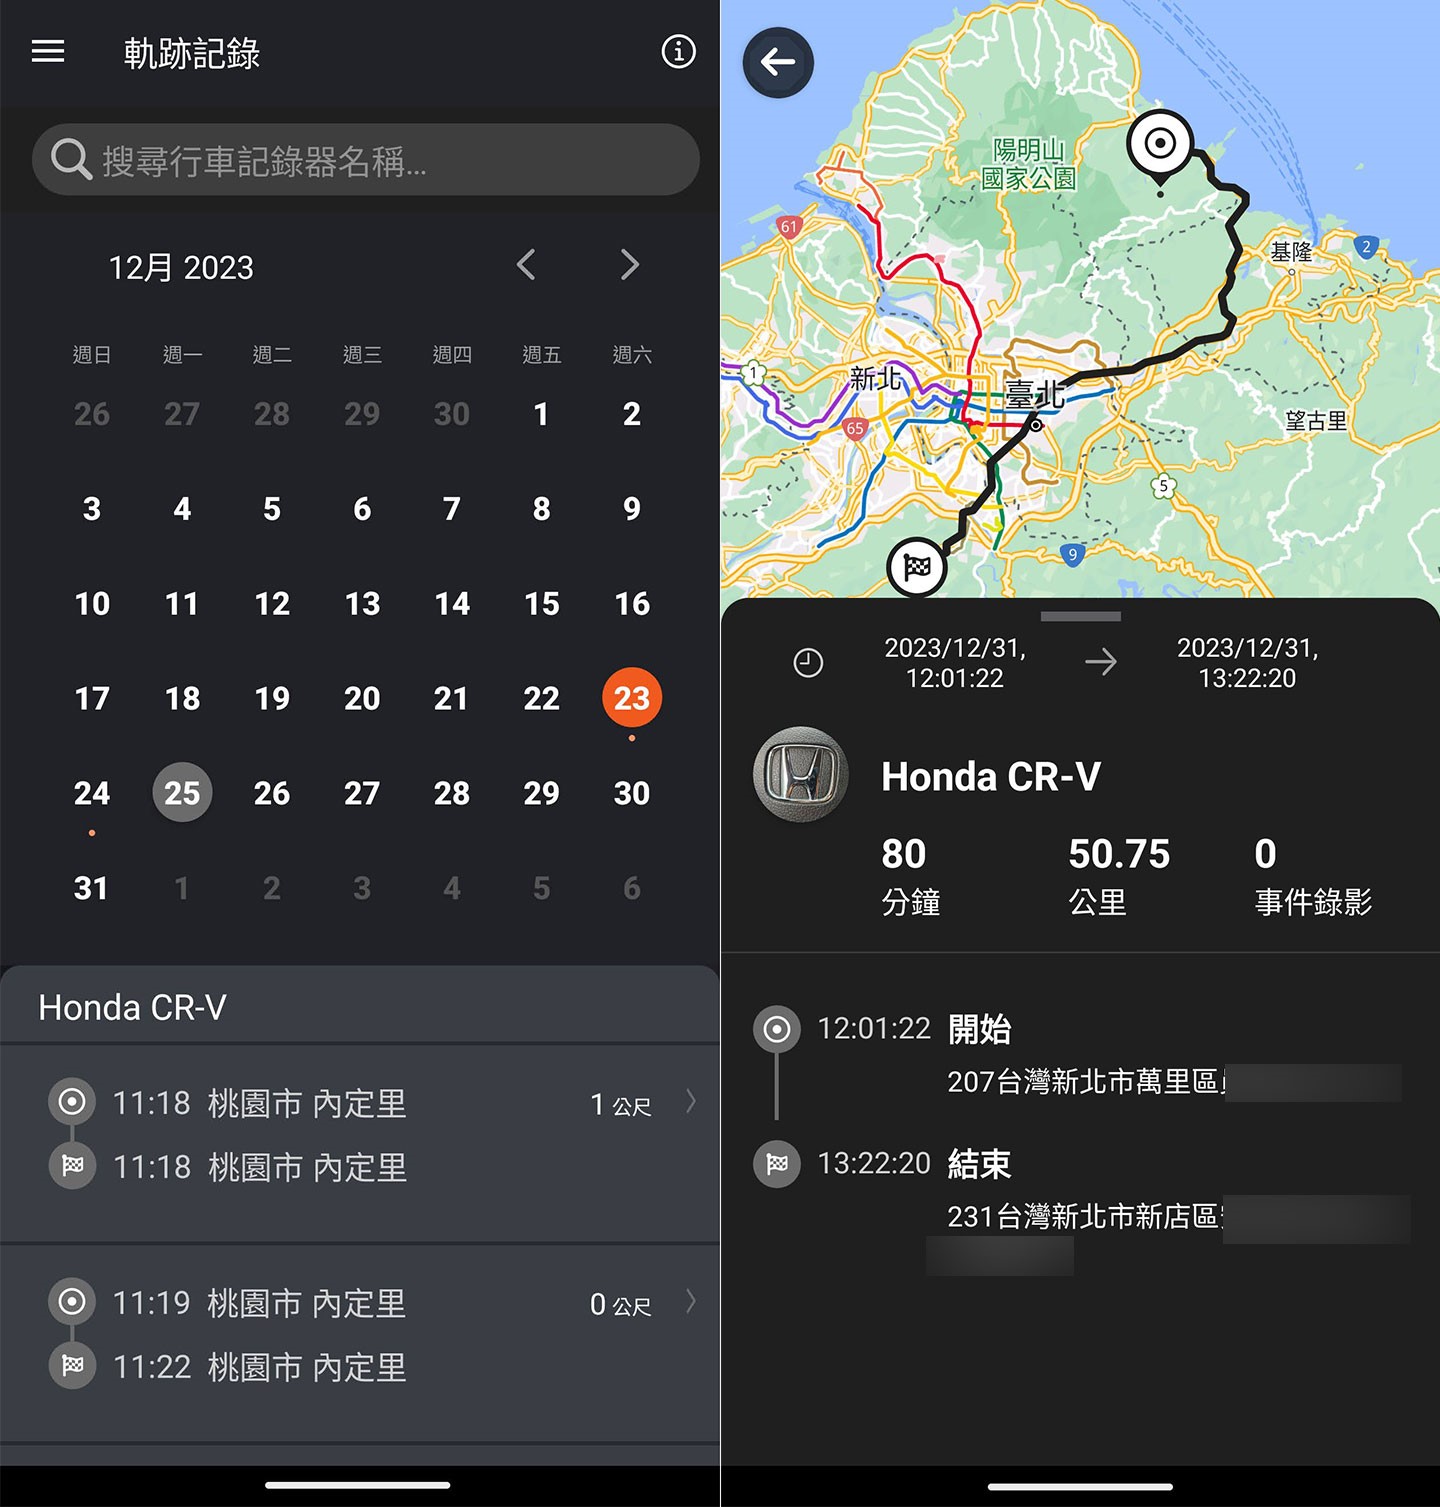 MioNext 也能透過內建的 GPS 記錄每日的行車軌跡，並提供日曆介面方便查找，點開後可看到行駛的路線、持續時間、行駛里程與開始 / 結束地點，如果一趟旅途發生事件的話，也會出現相關時間與地點資訊。